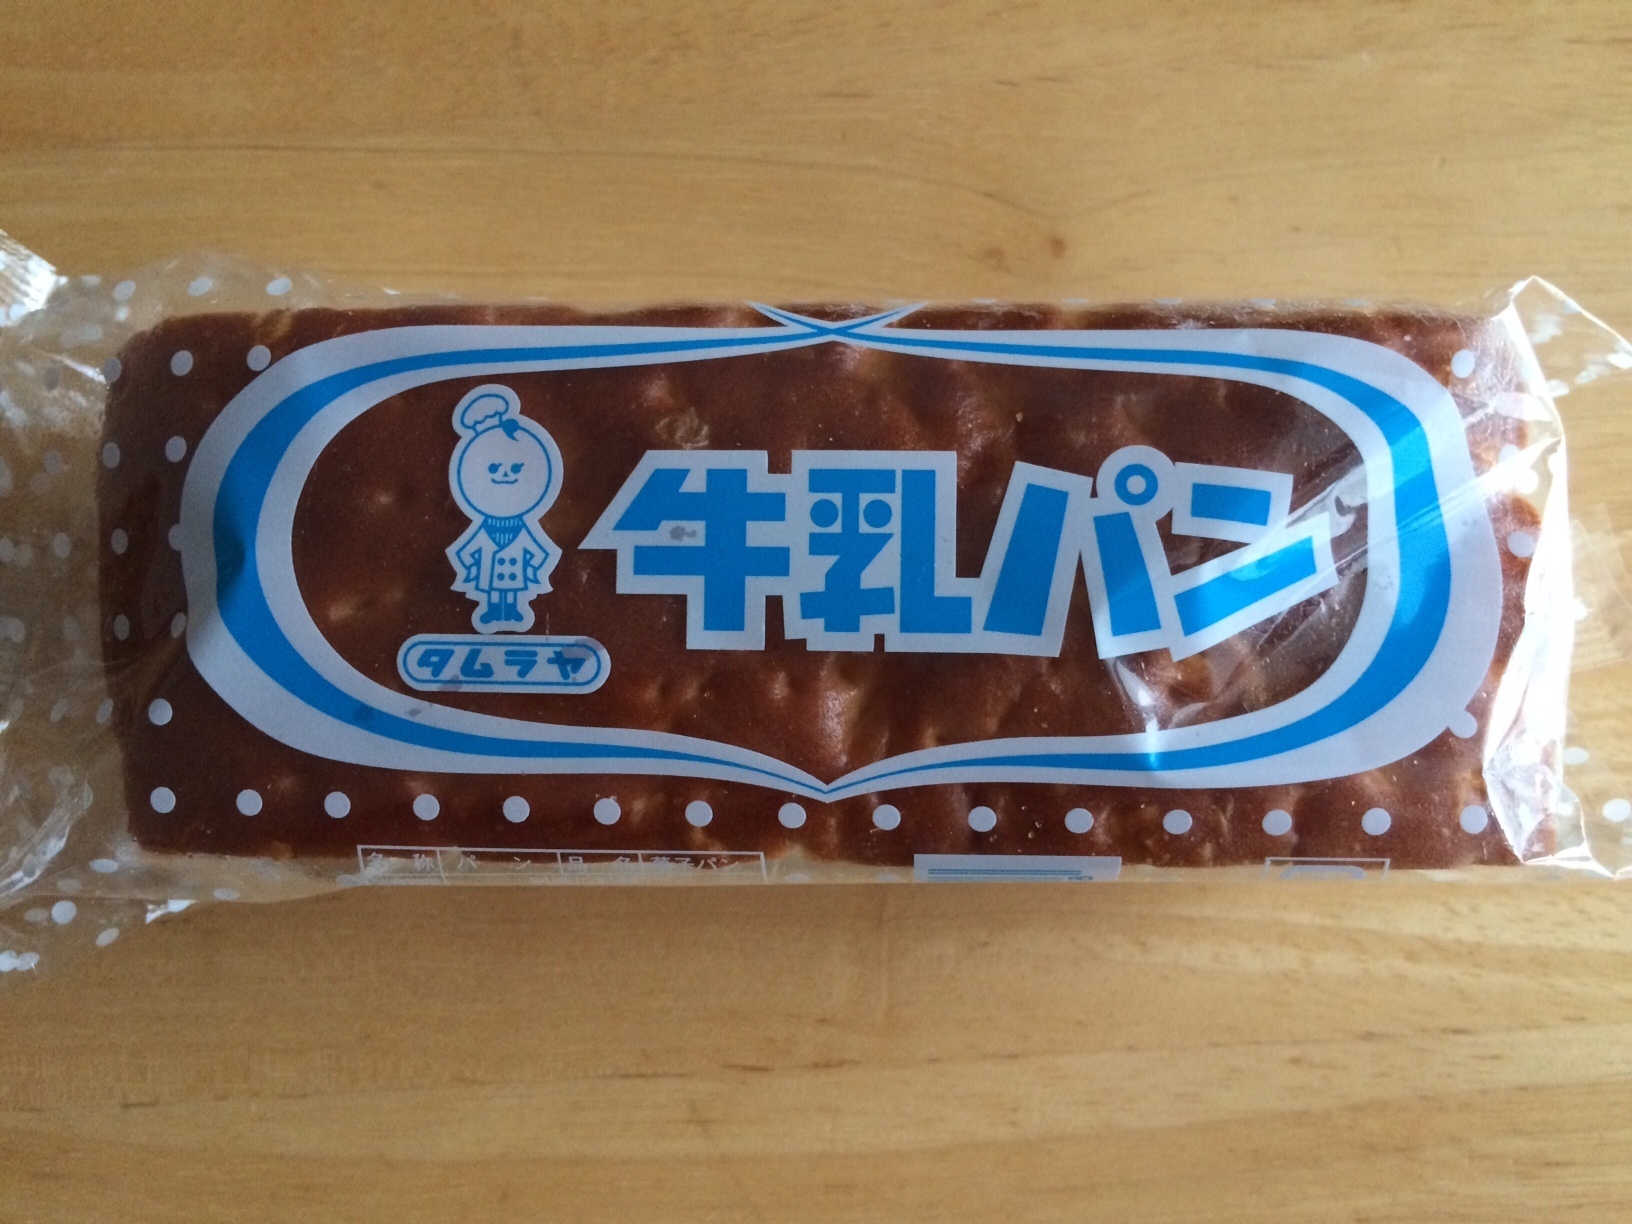 長野県のお土産にオススメのすごく大きなご当地パン モントウル田村屋の牛乳パン マイちゃんに聞いた ちょっと早くてちょっと良い普通じゃないニュース テトテ 中の人の ちょっと早くてちょっと良いニュース